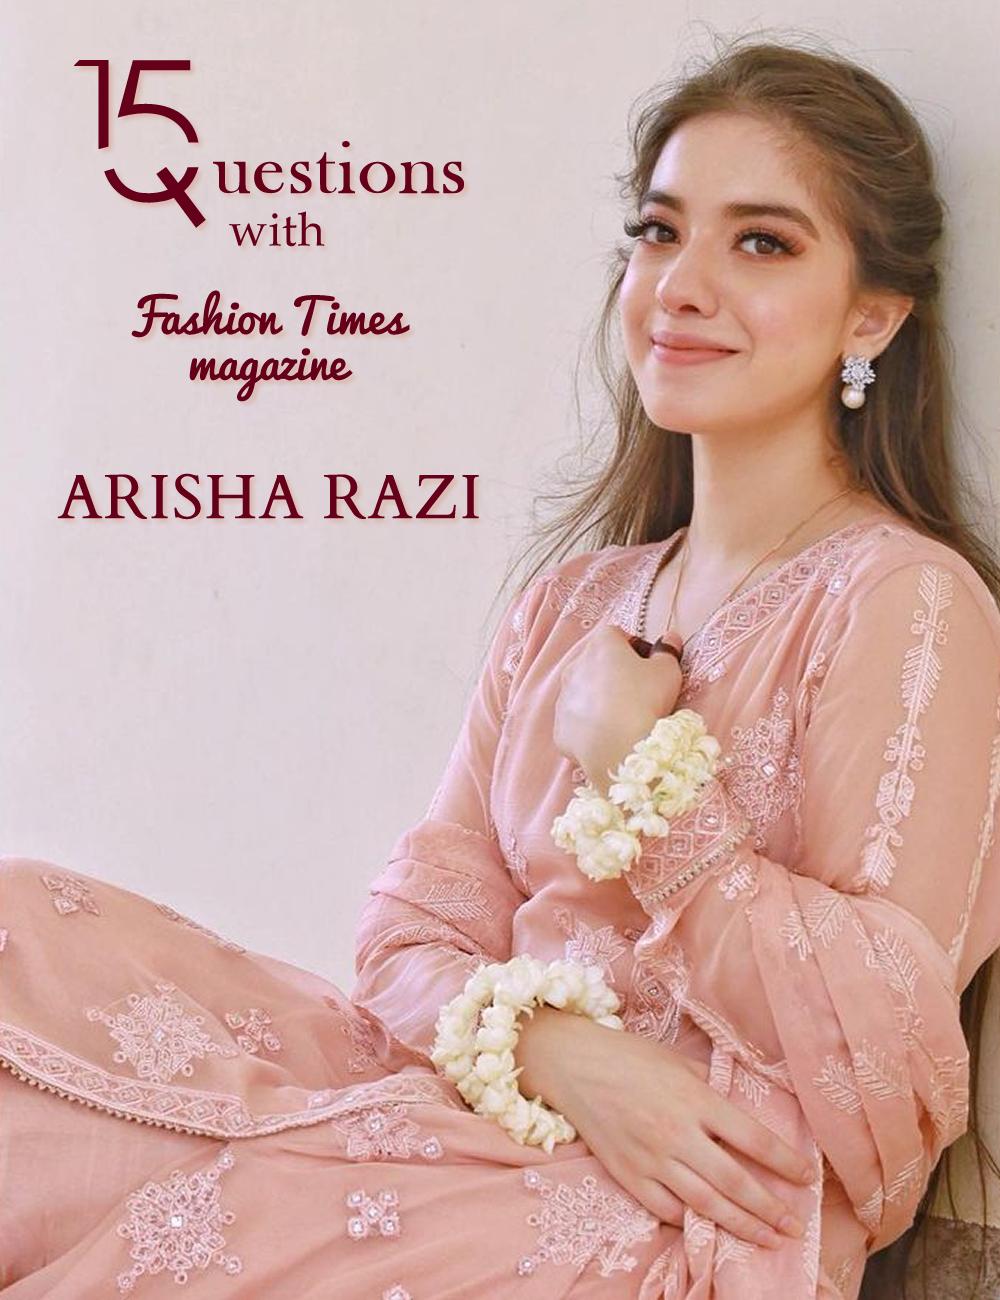 Arisha Razi